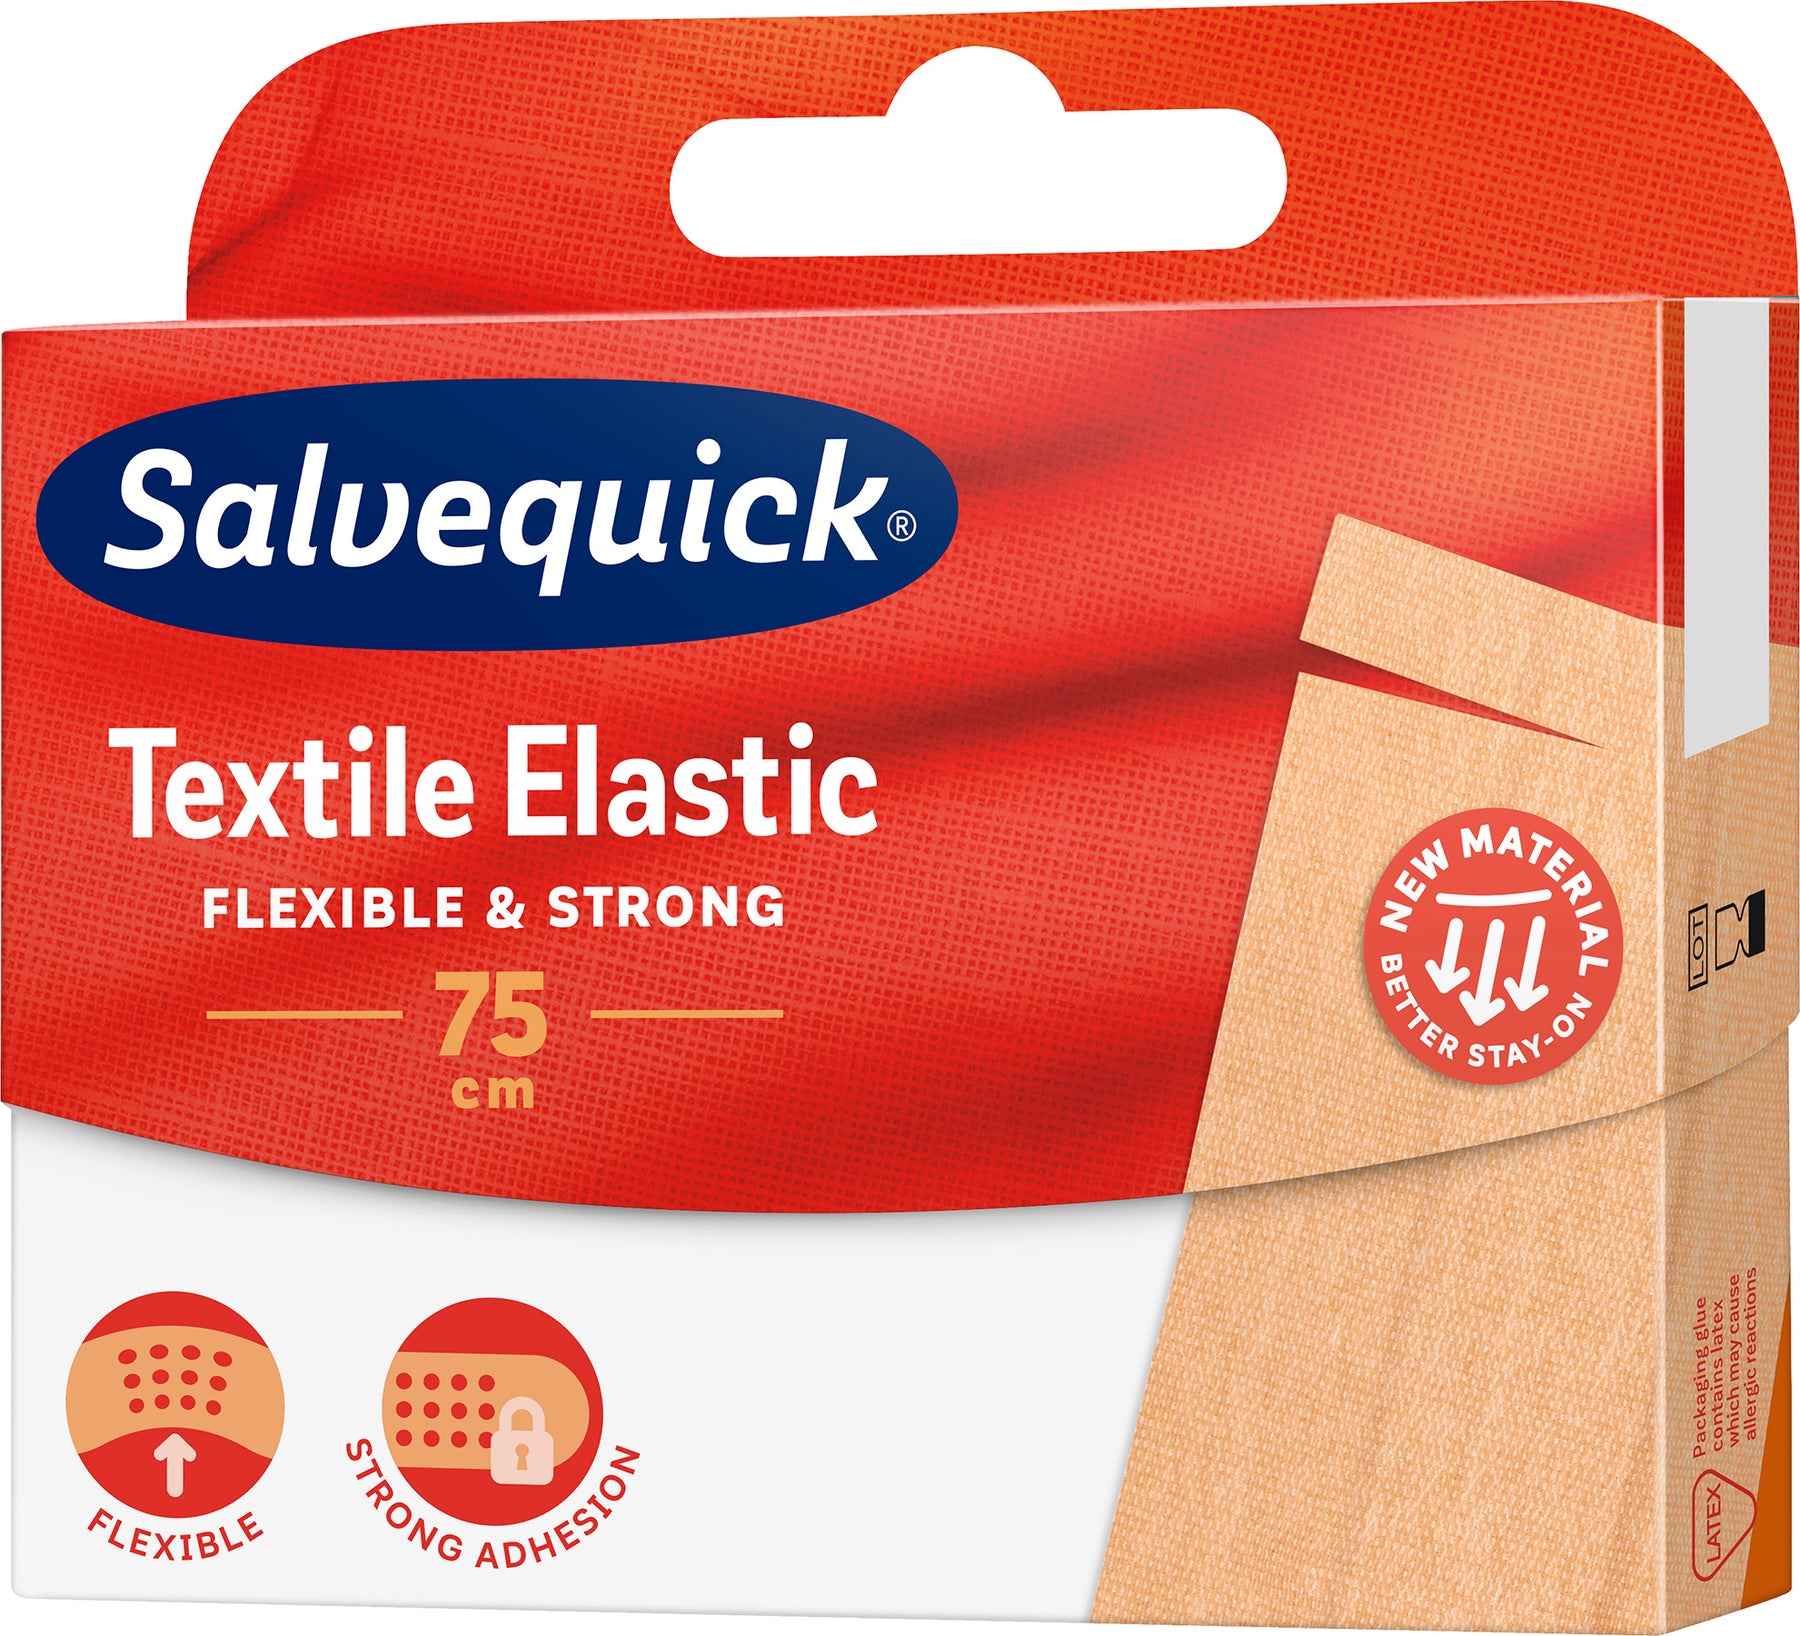 Salvequick Textile Elastic 75 cm laastari